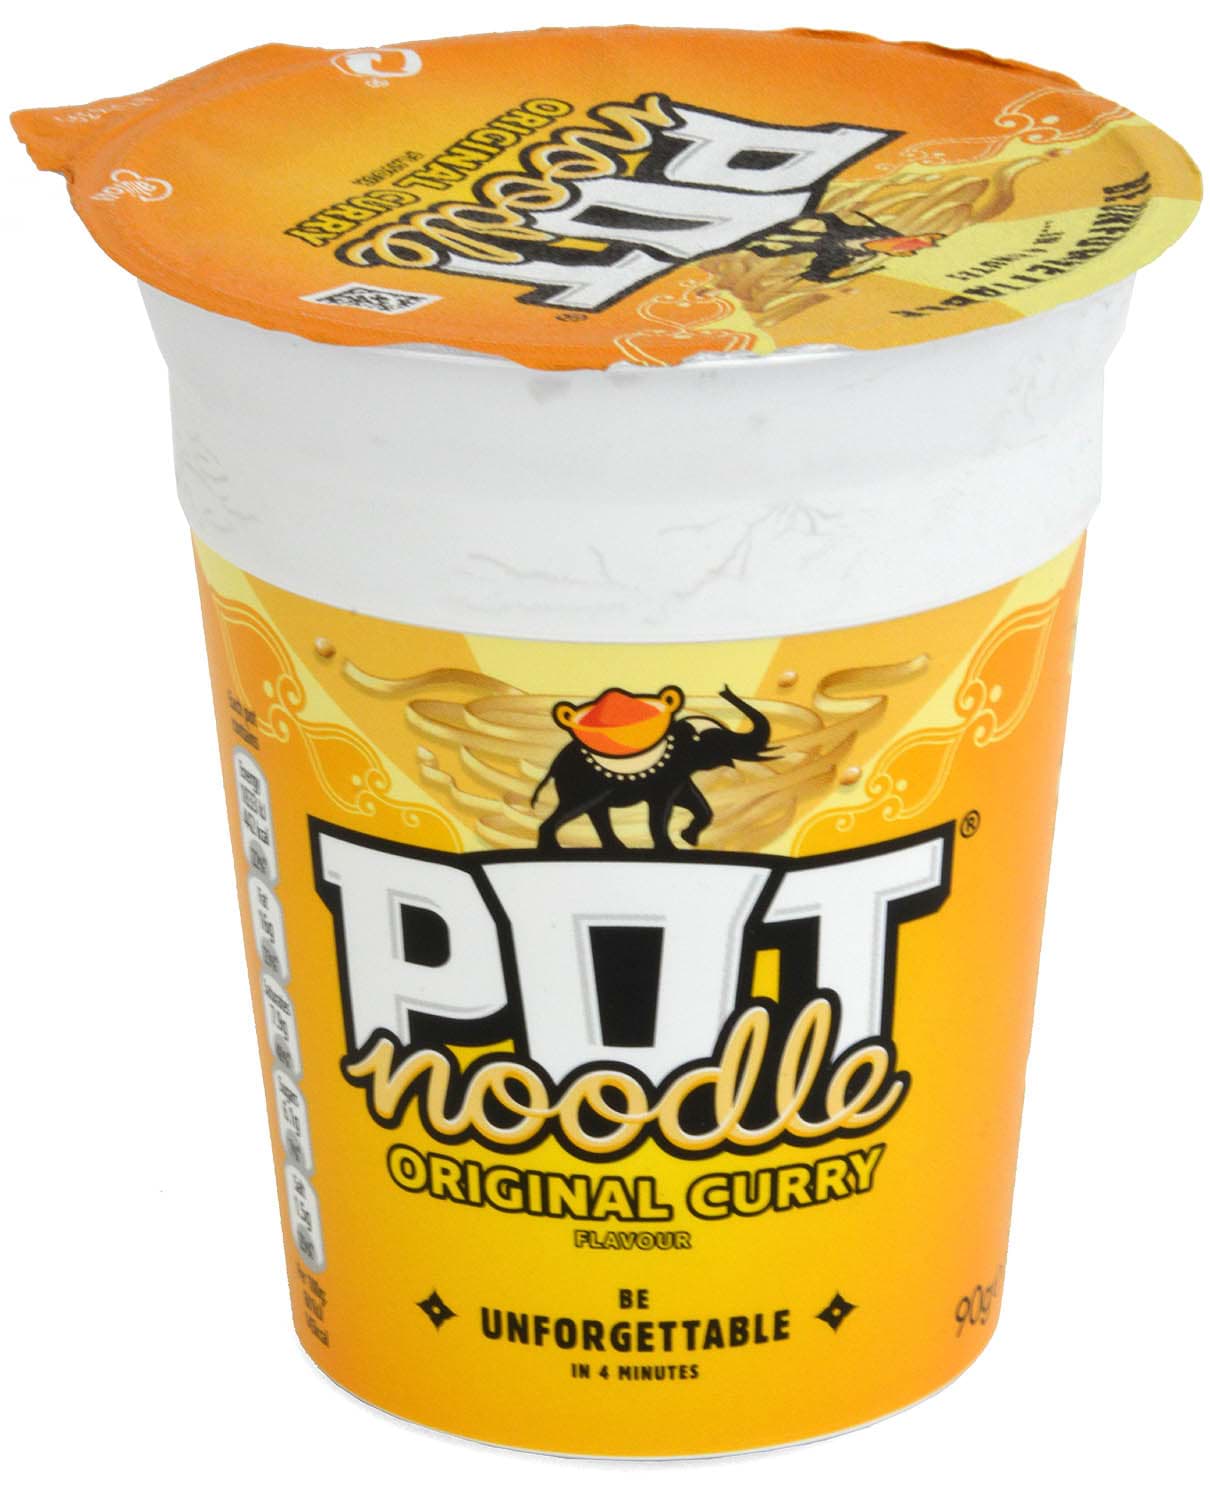 Picture of Pot Noodle Original Curry